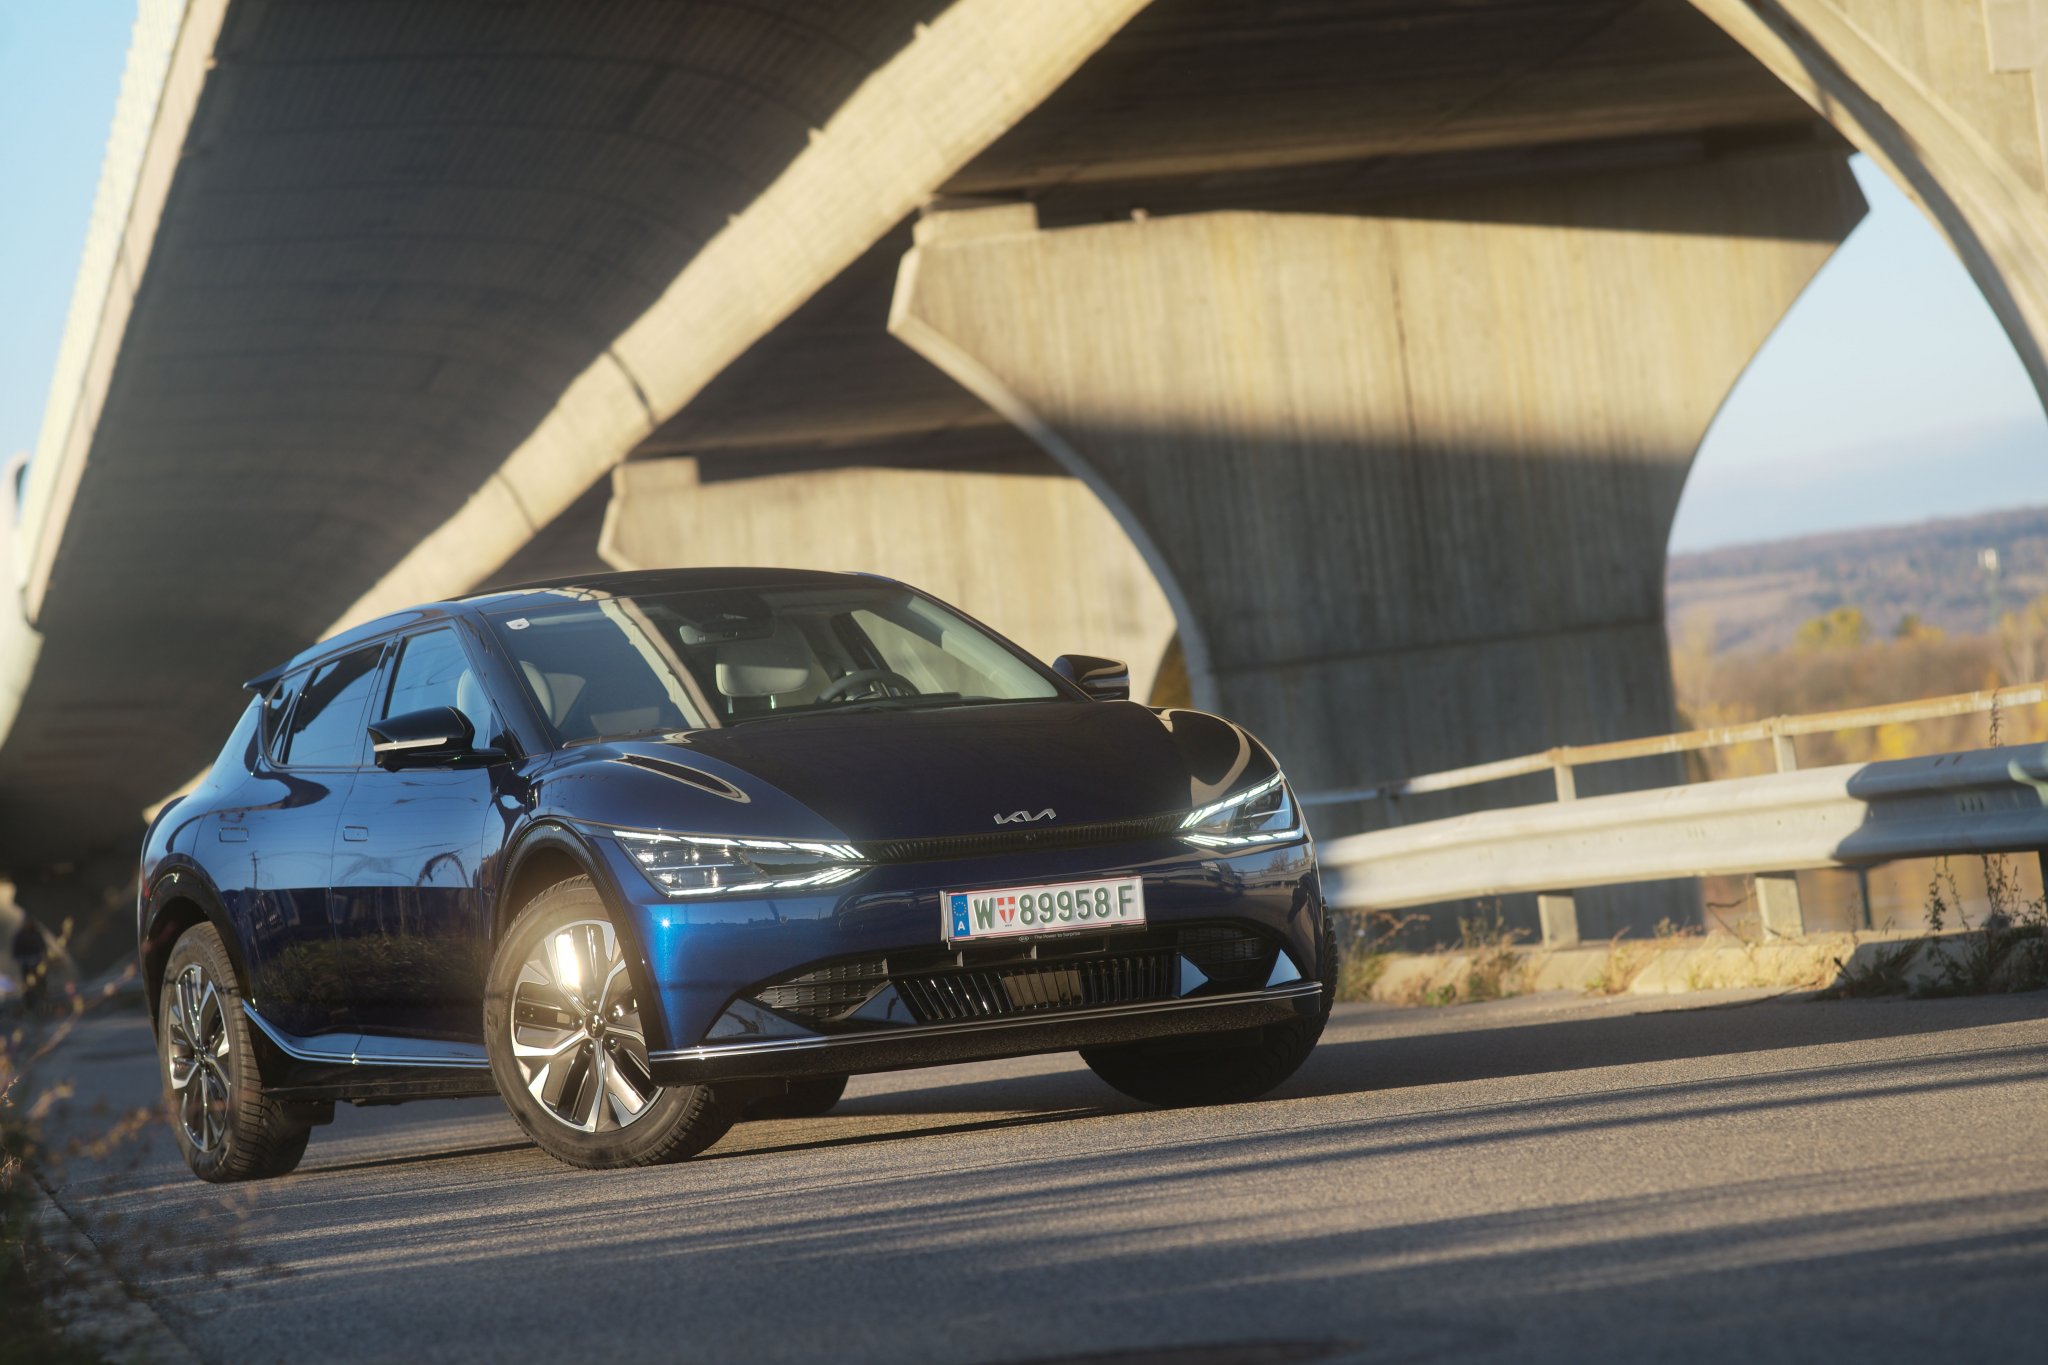 Ein blauer Kia EV6, das Car of the Year 2022, steht auf einer Straße unter einer großen Brücke an einem sonnigen Tag.